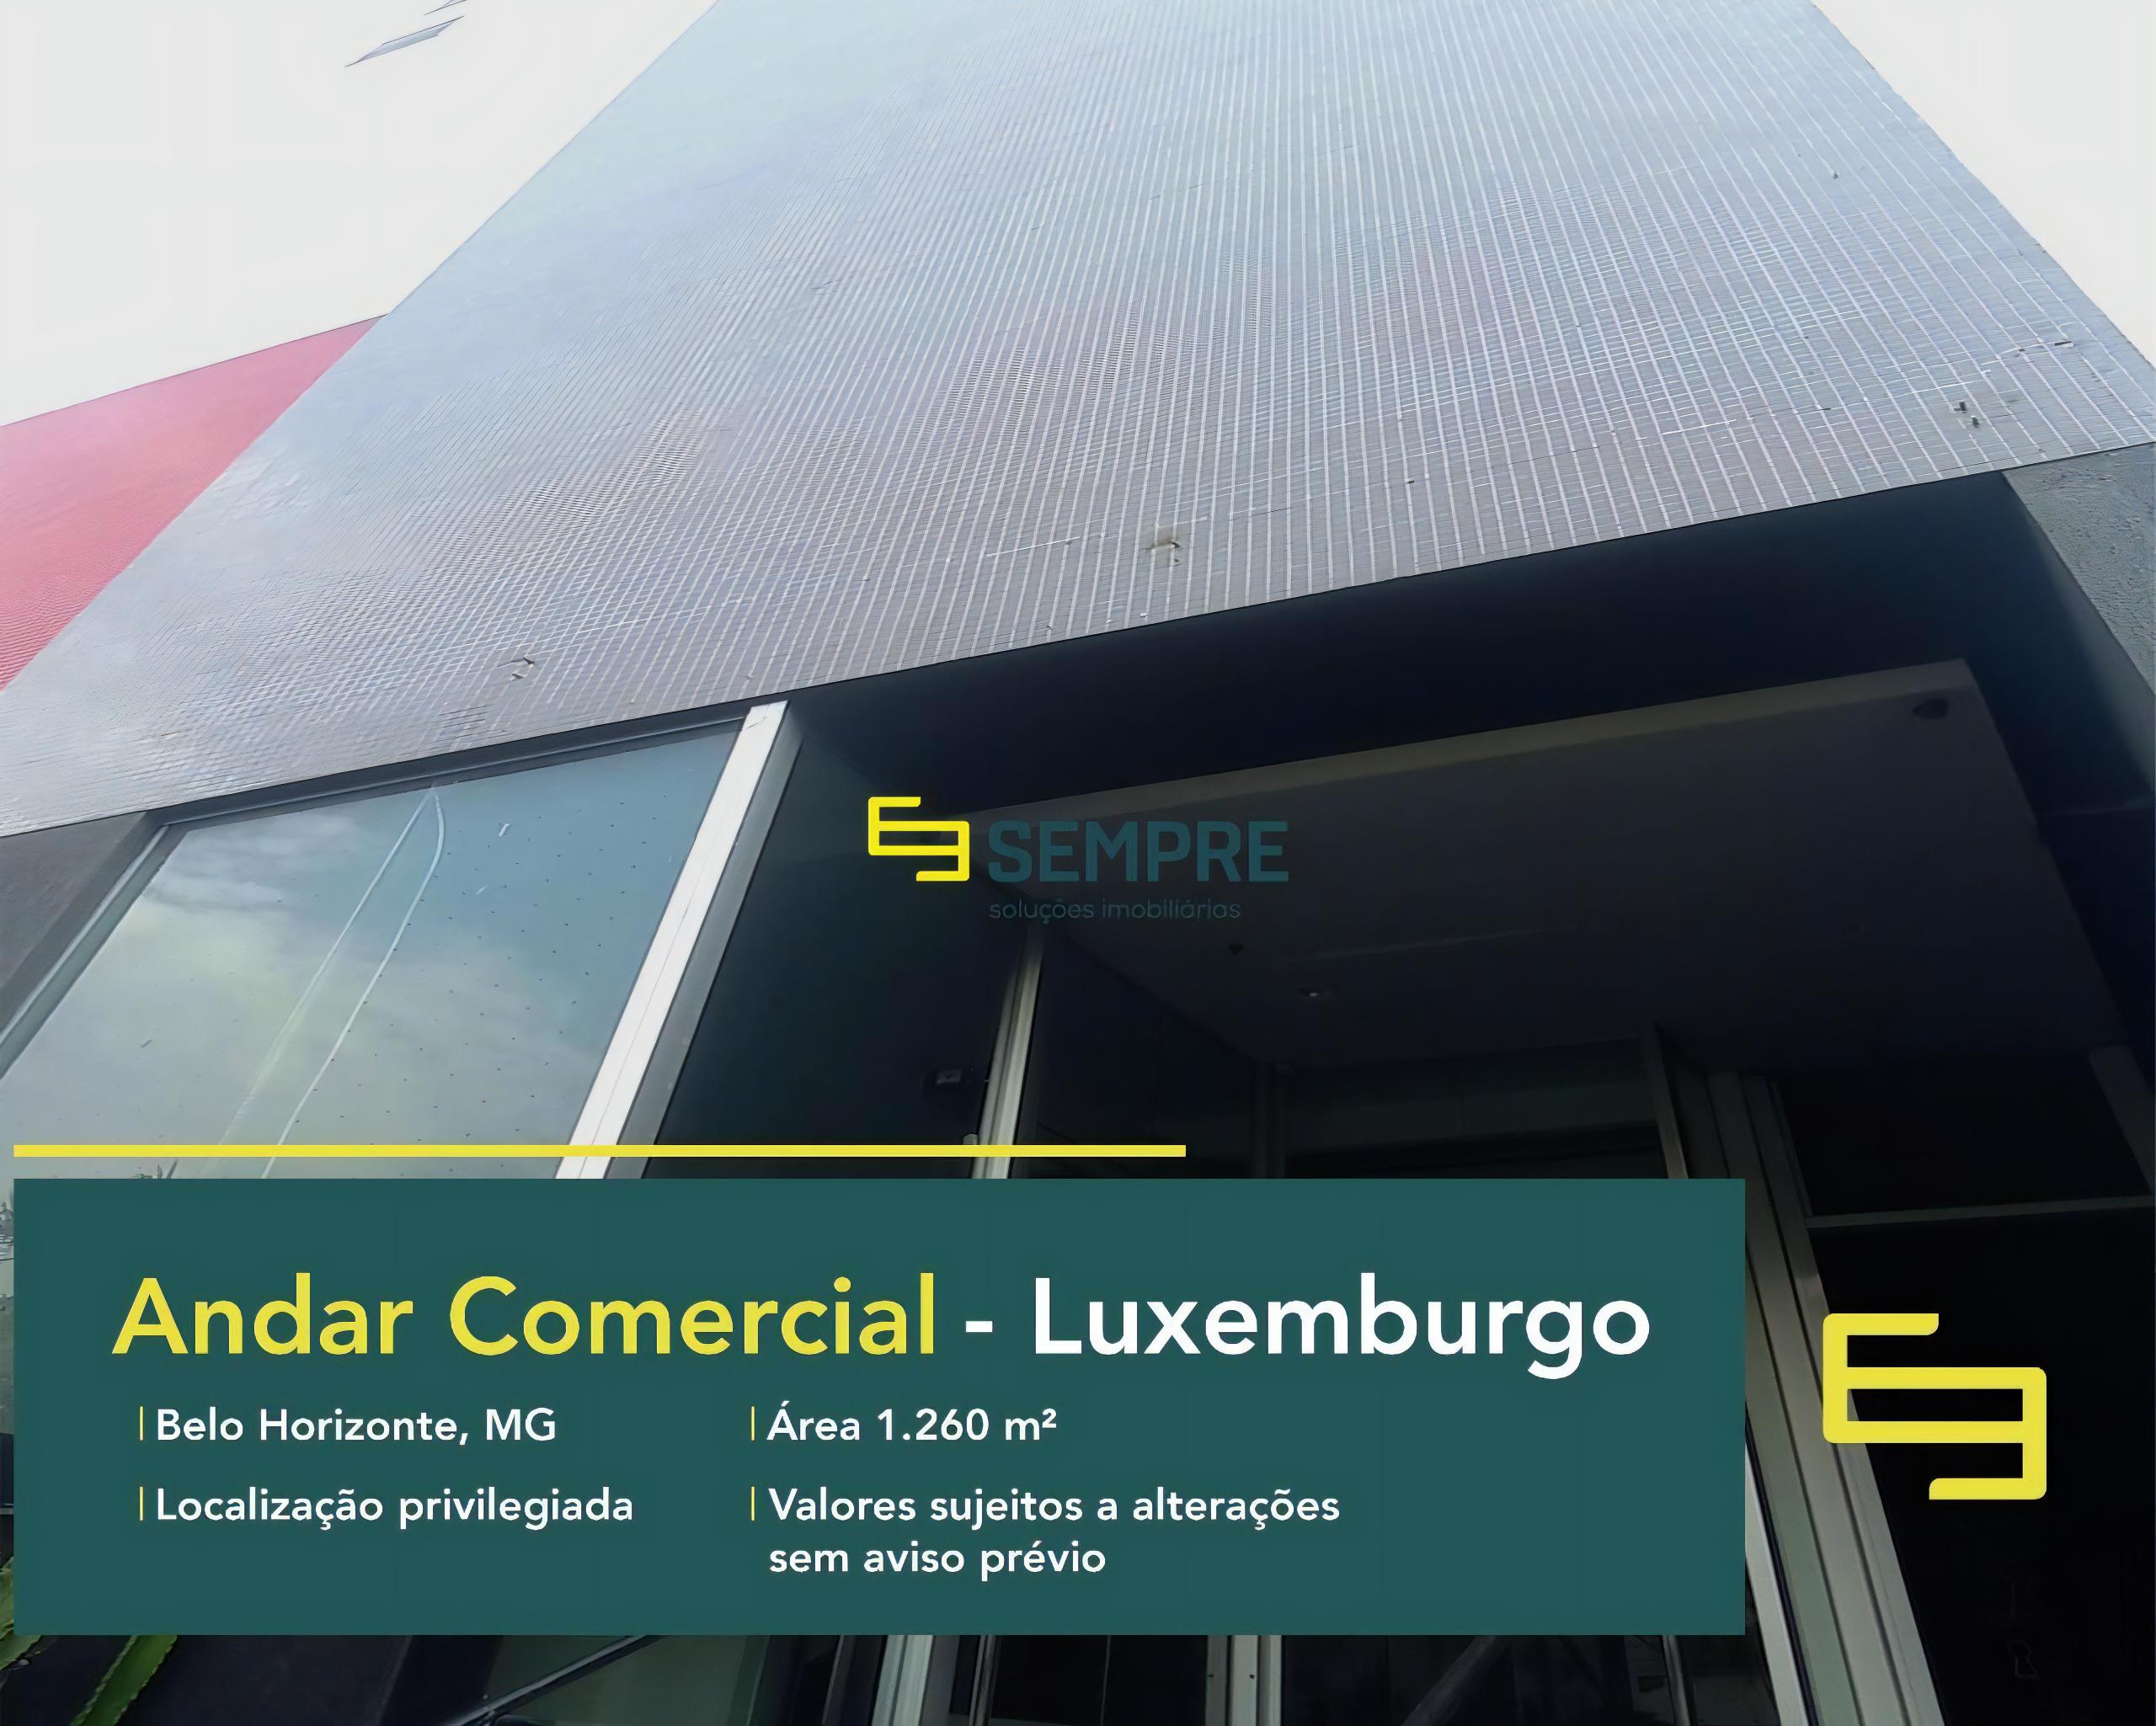 Andar comercial no bairro Luxemburgo para alugar em BH, excelente localização. O estabelecimento comercial conta com área de 1.260 m².